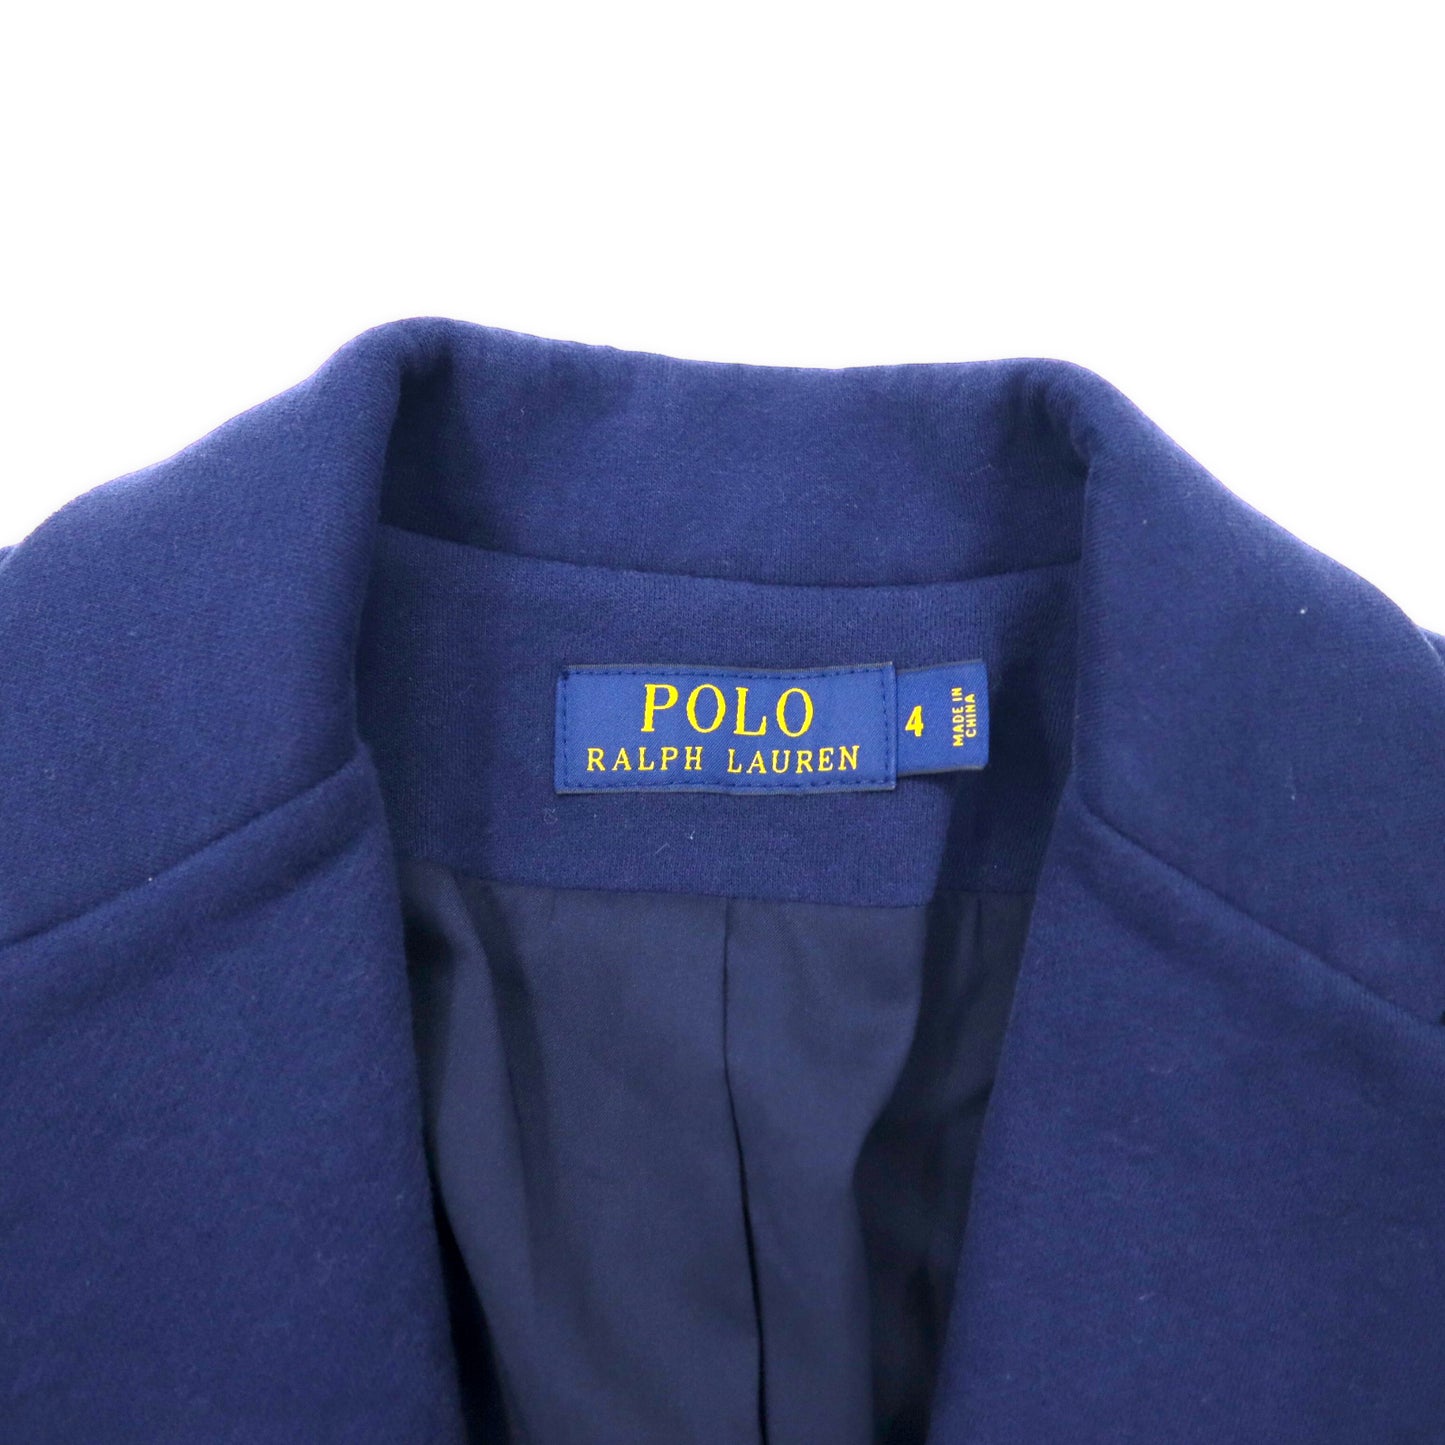 POLO RALPH LAUREN スクールジャケット ブレザー 4 ネイビー コットン エンブレムロゴ ワッペン 金ボタン 紺ブレ